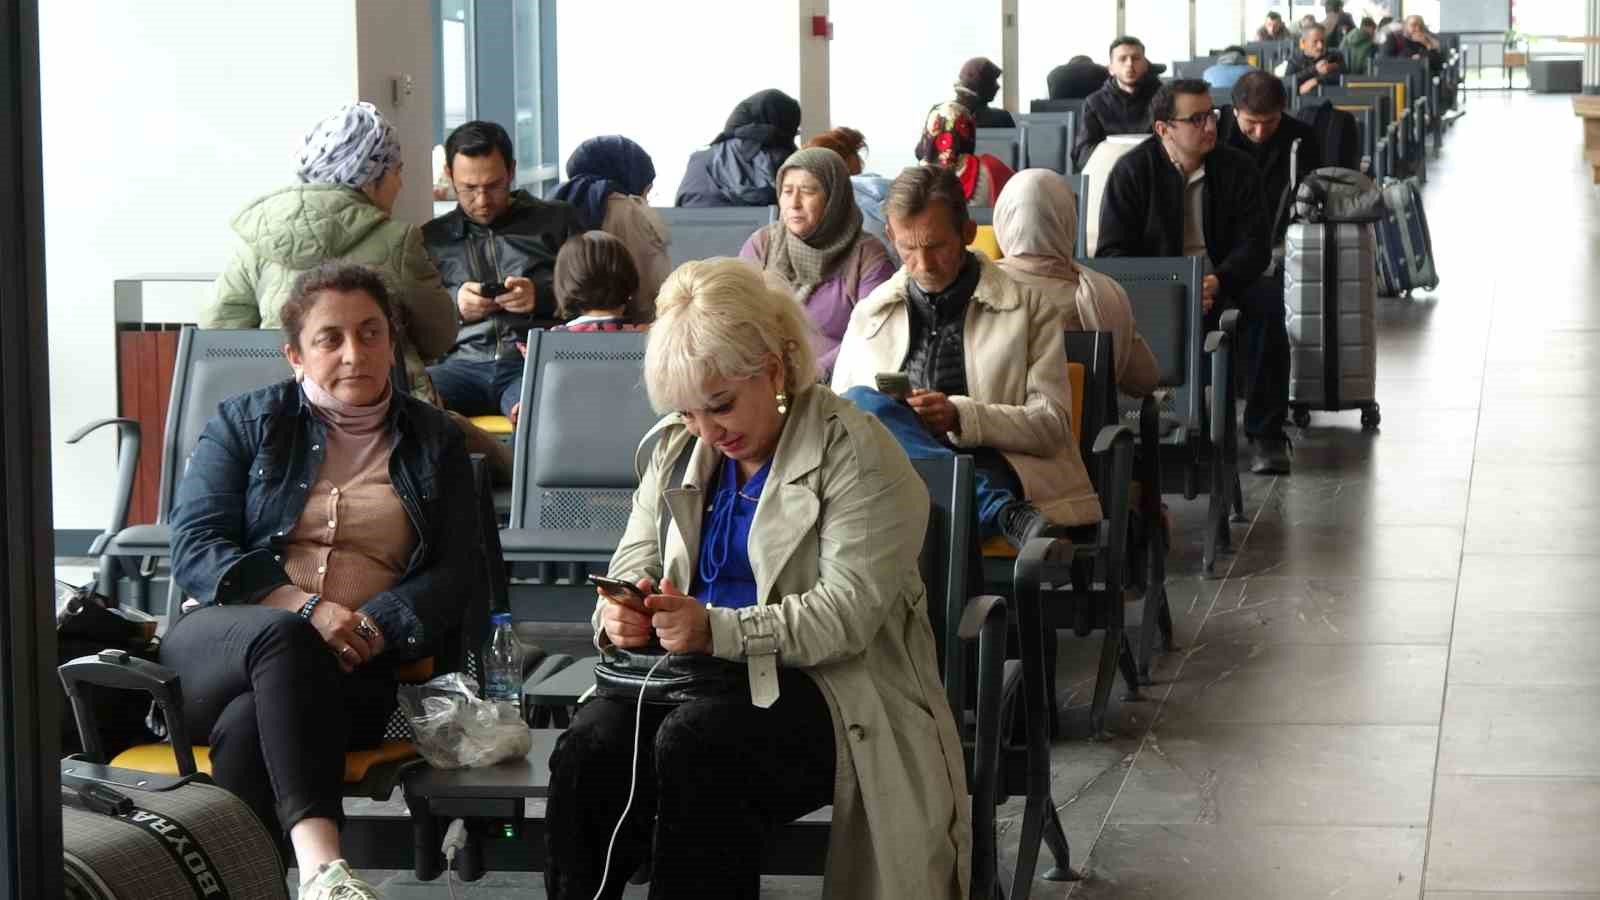 9 günlük resmi tatilin son gününde trabzon şehirlerarası otobüs terminali’nde yoğunluk yaşandı